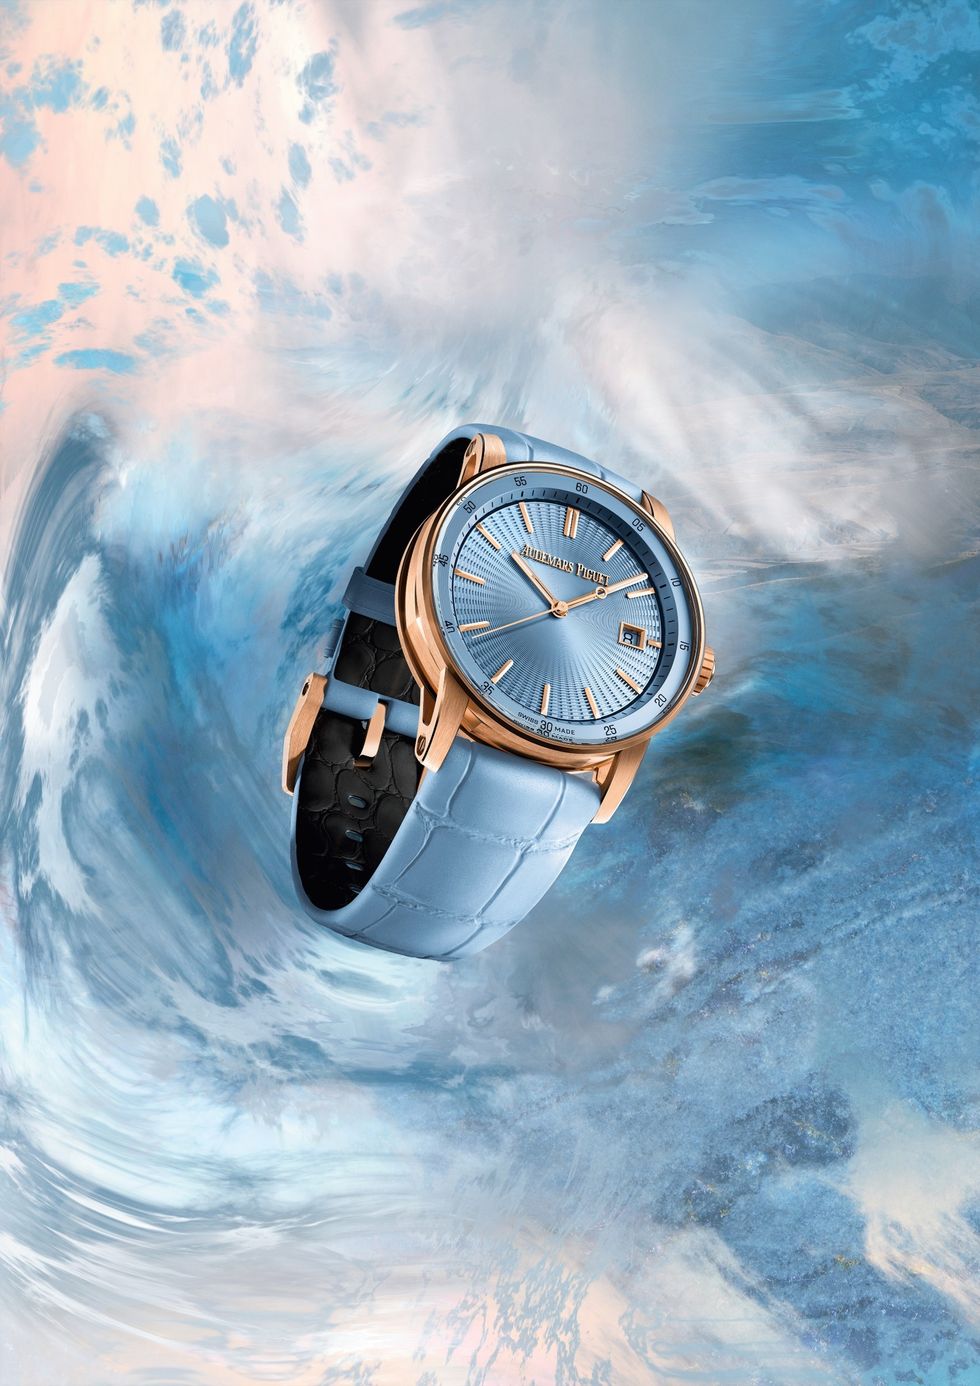 愛彼ap以玫瑰金錶殼搭配淺藍色錶面和錶帶的全新code 1159系列38毫米自動上鏈腕錶。